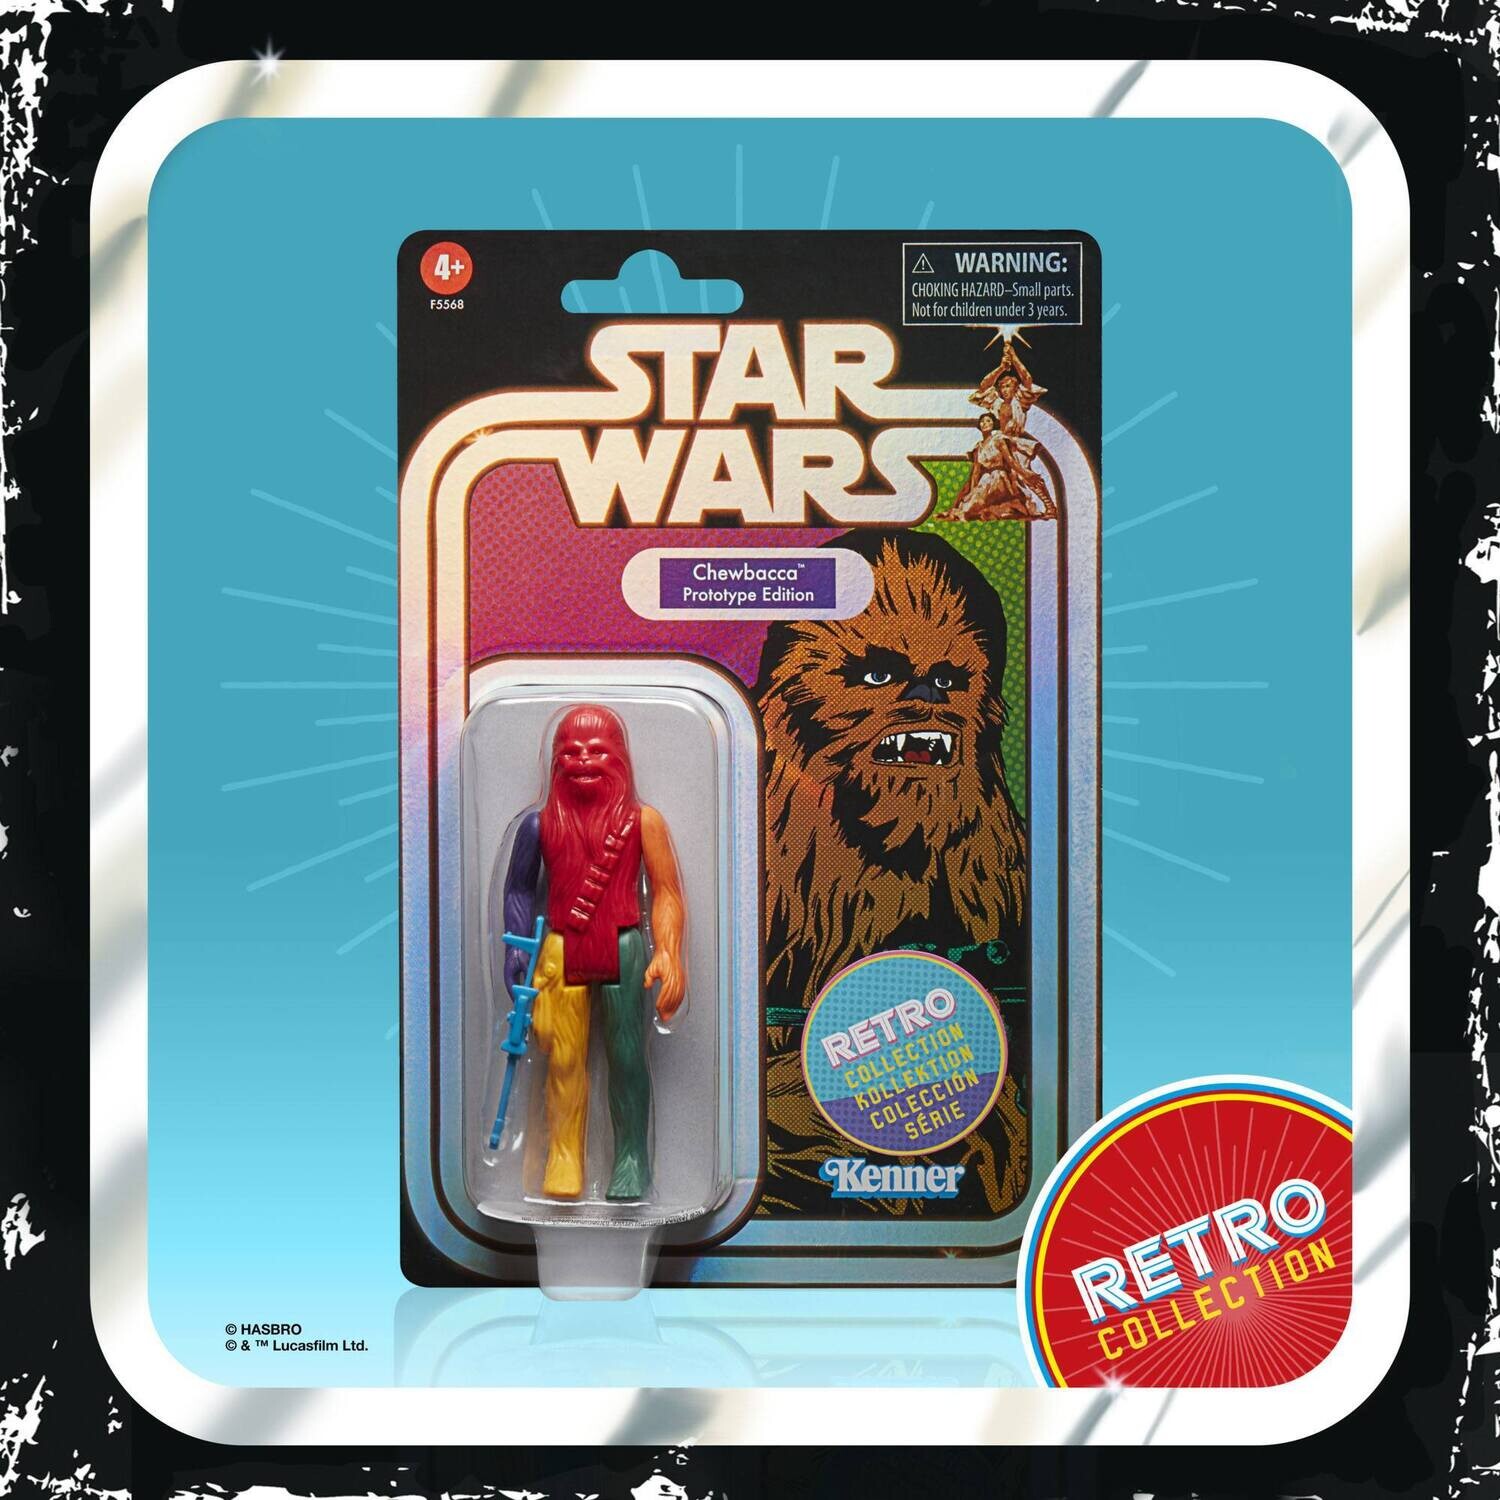 Pre-order: Star Wars Retro Collection Chewbacca Prototype Edition (max 3 per person)